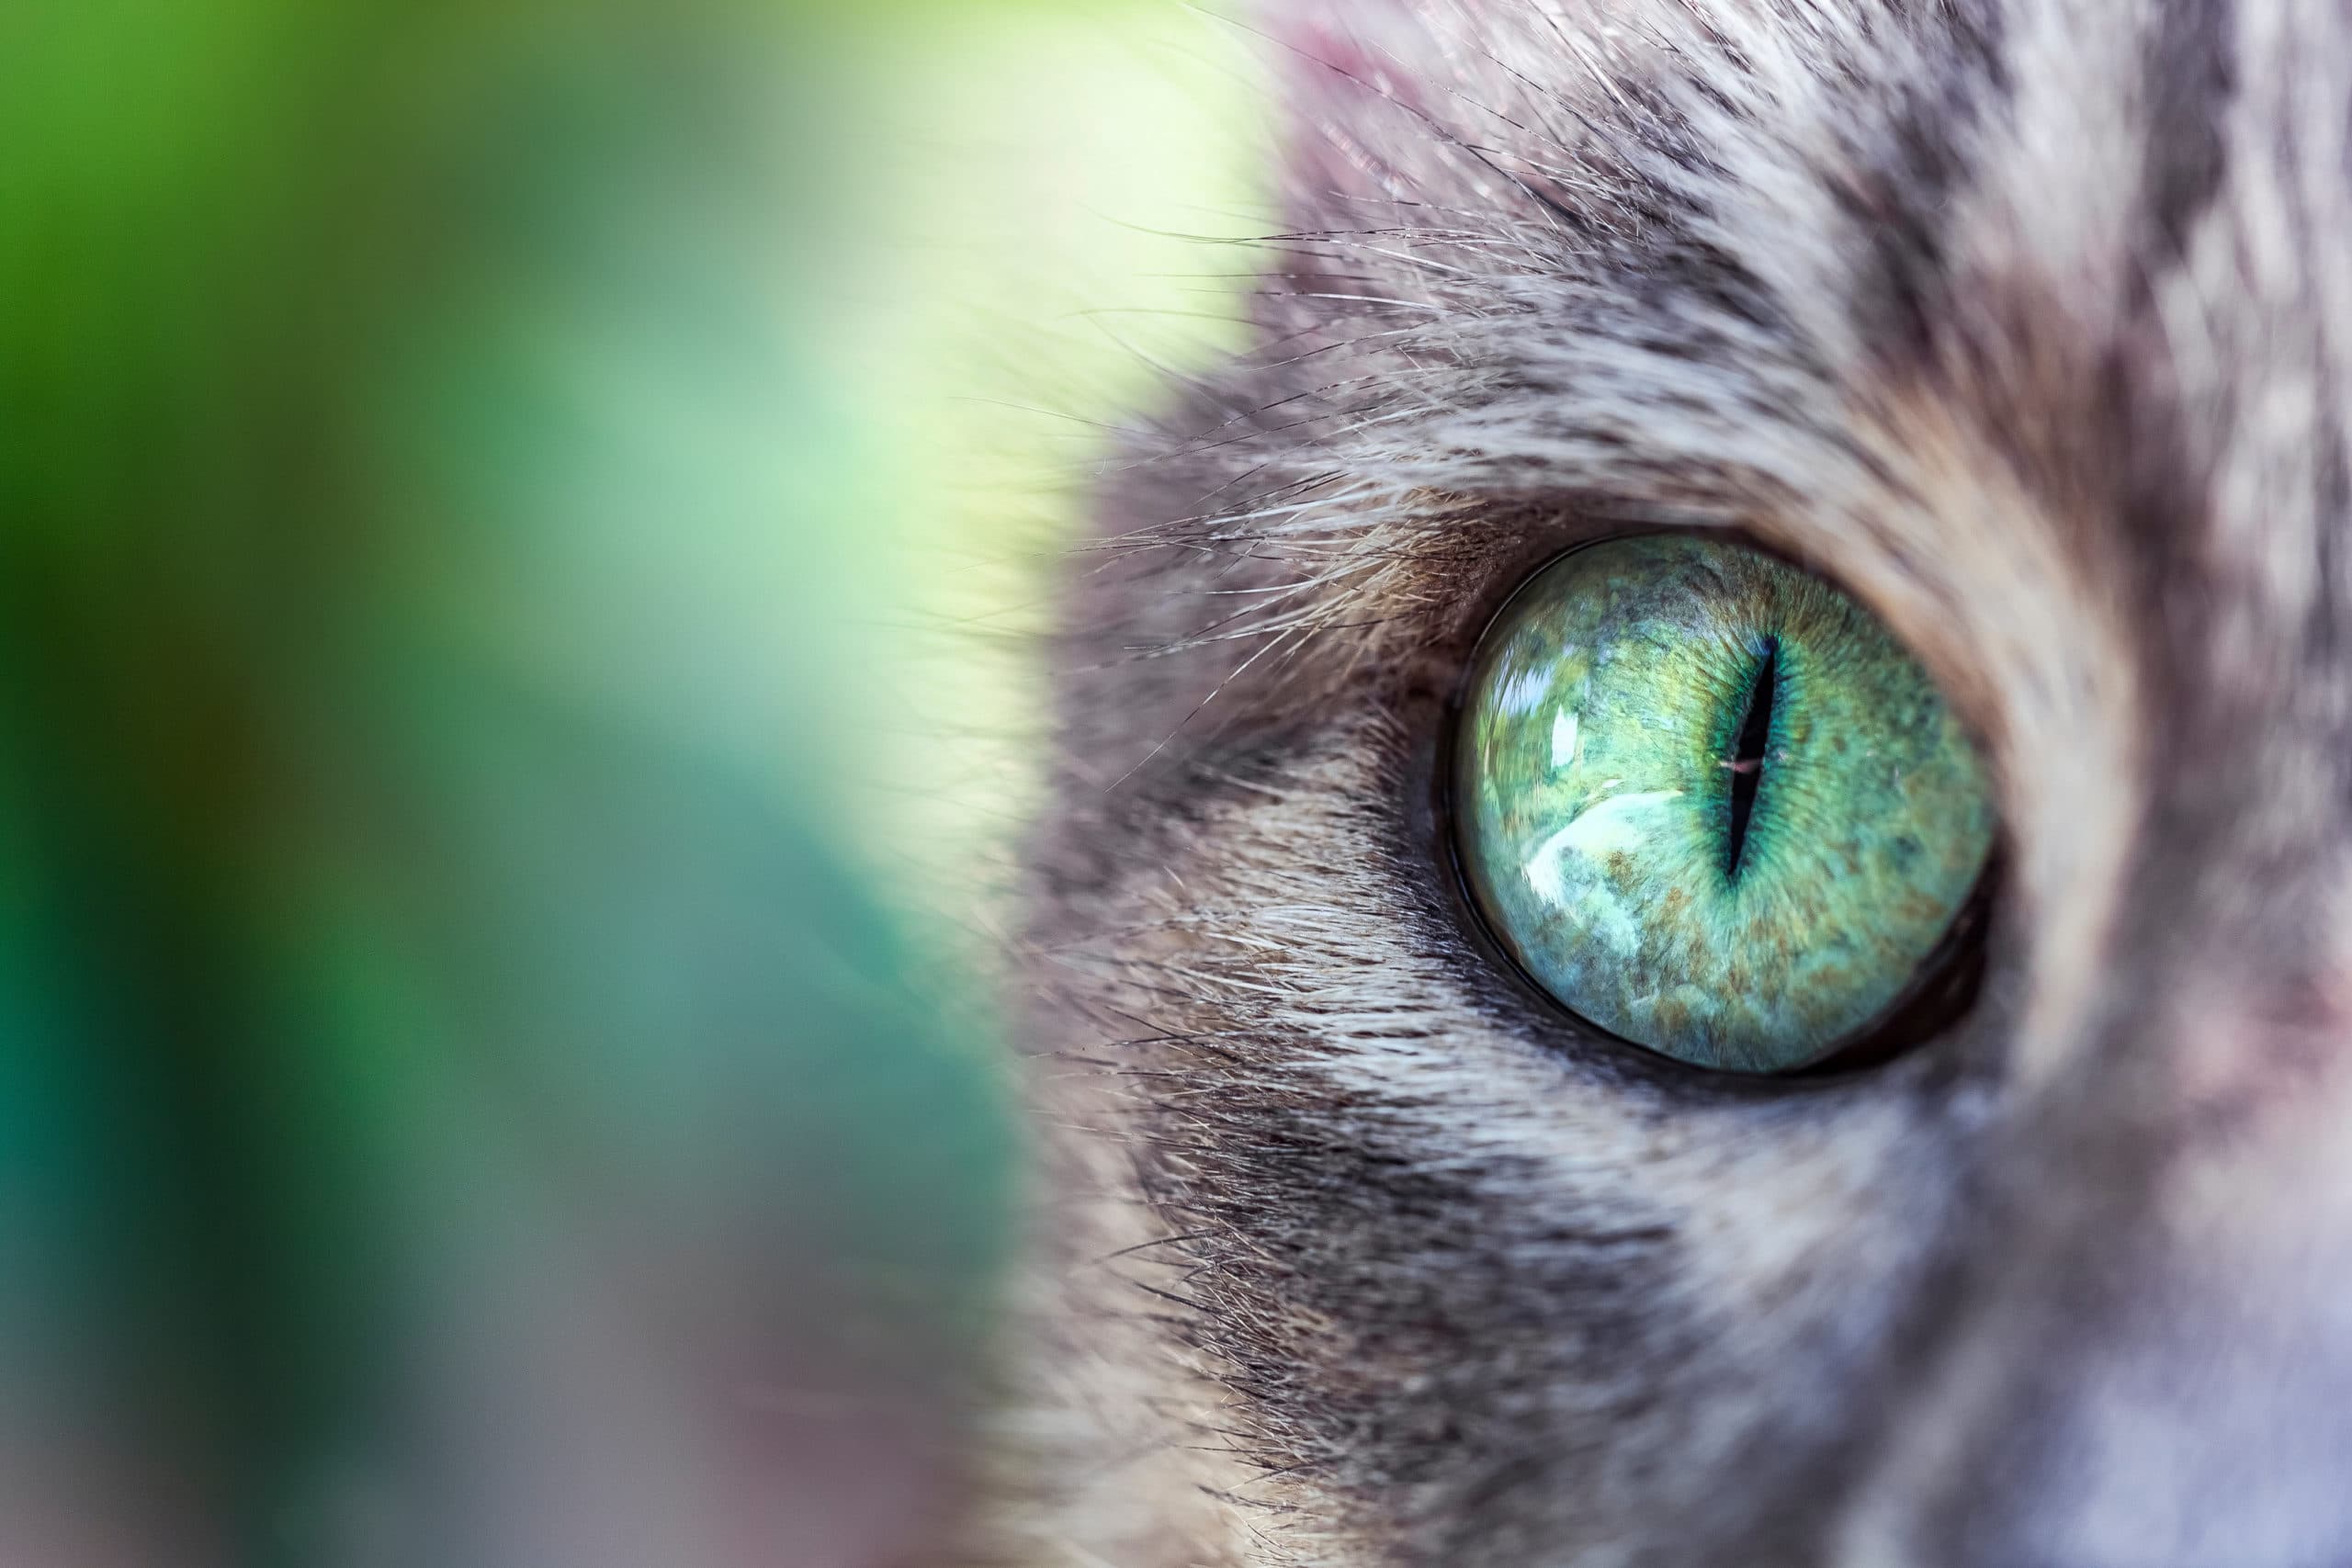 L'oeil vert clair d'un chat rayé gris sur un fond de nature verte